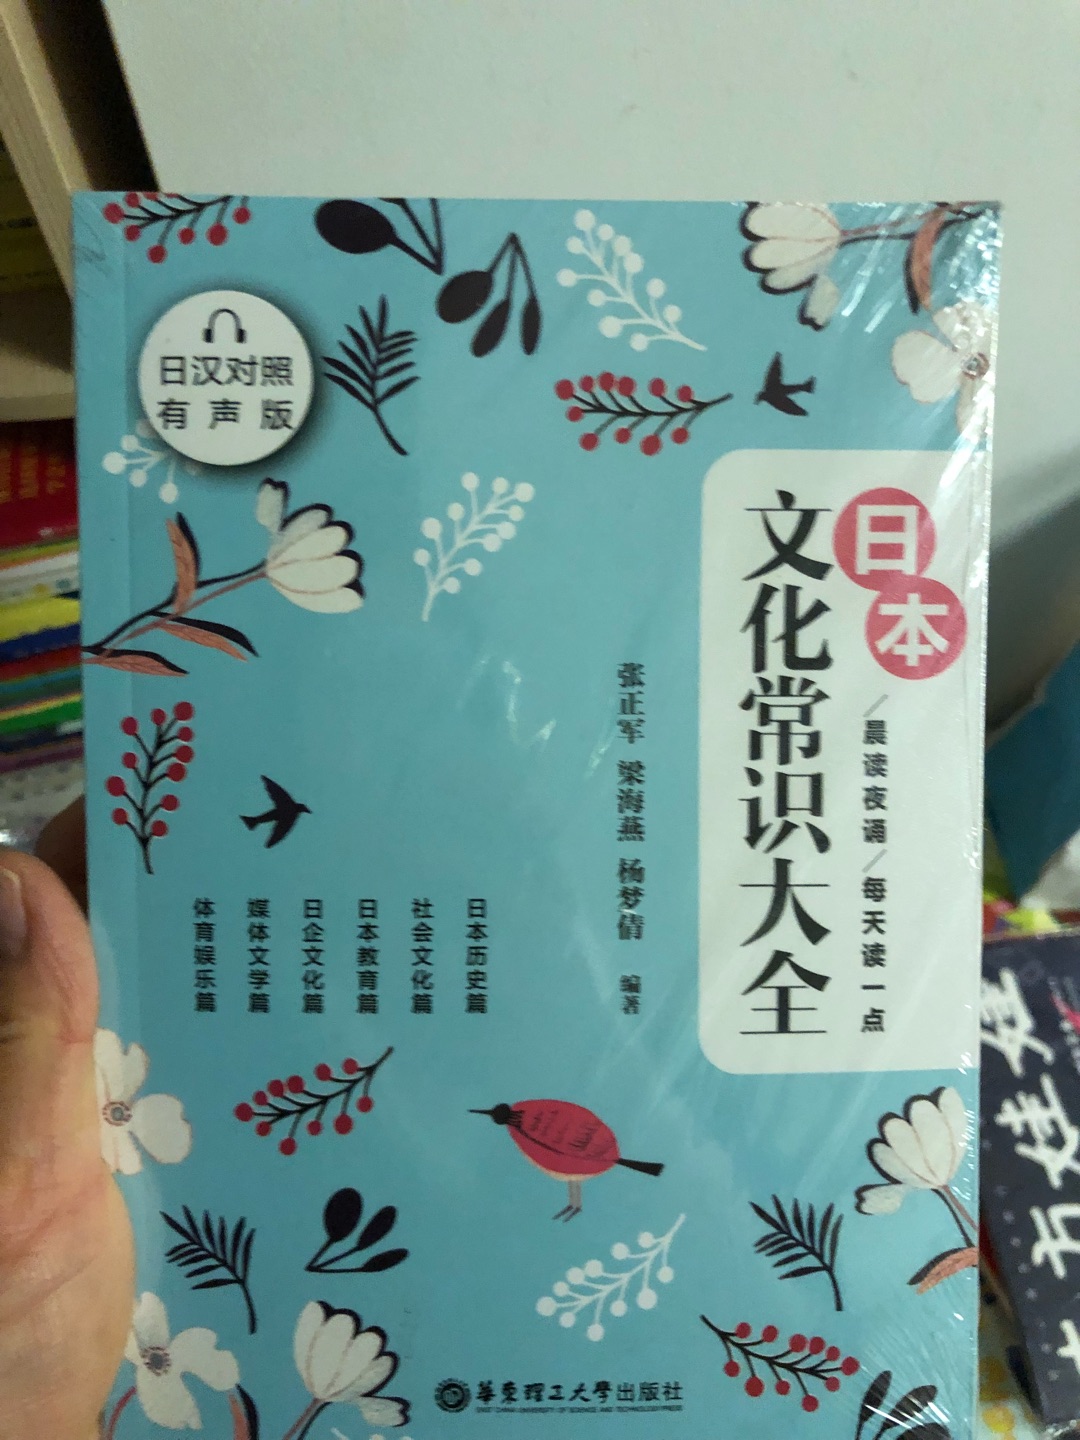 好久没看日语书了 这次买的对照版看一下 哈哈哈估计忘没有了 有活动买书真是划算到家了 太赞啦 买书就认准了